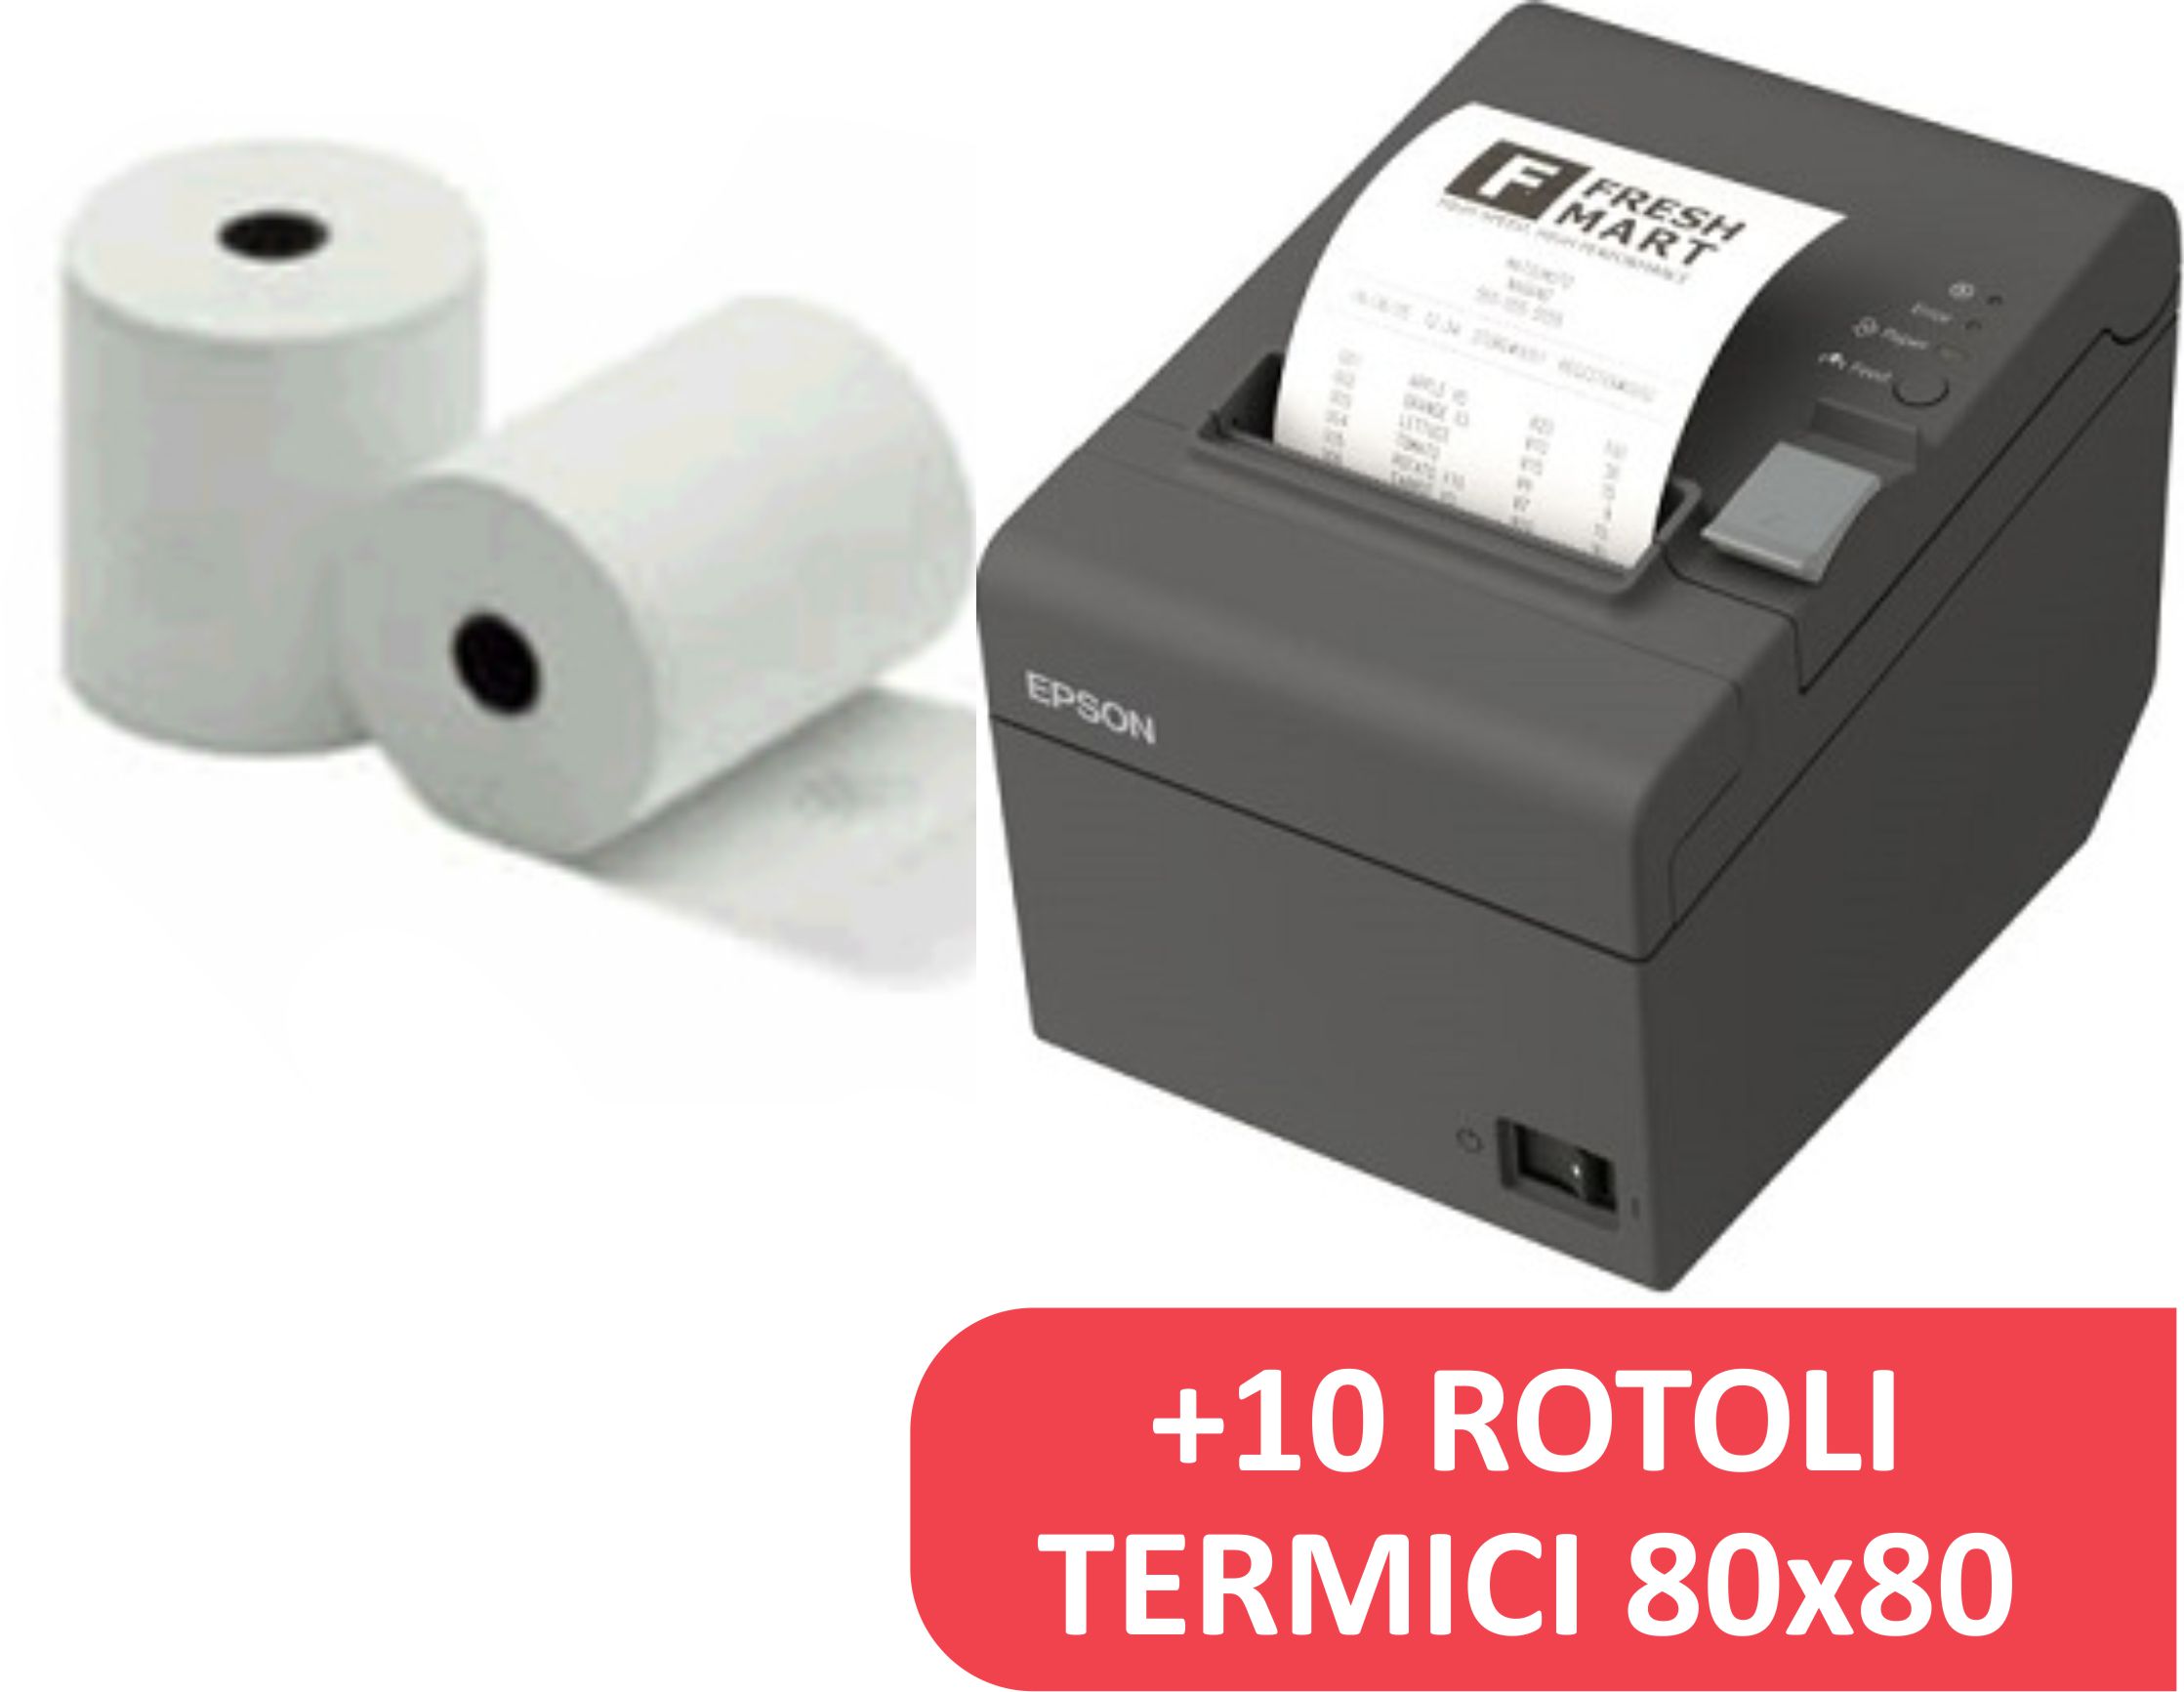 Epson Stampante Termica Pos TM-T20II Usb e Seriale+ 10 Rotoli Termici 80×80  55 –